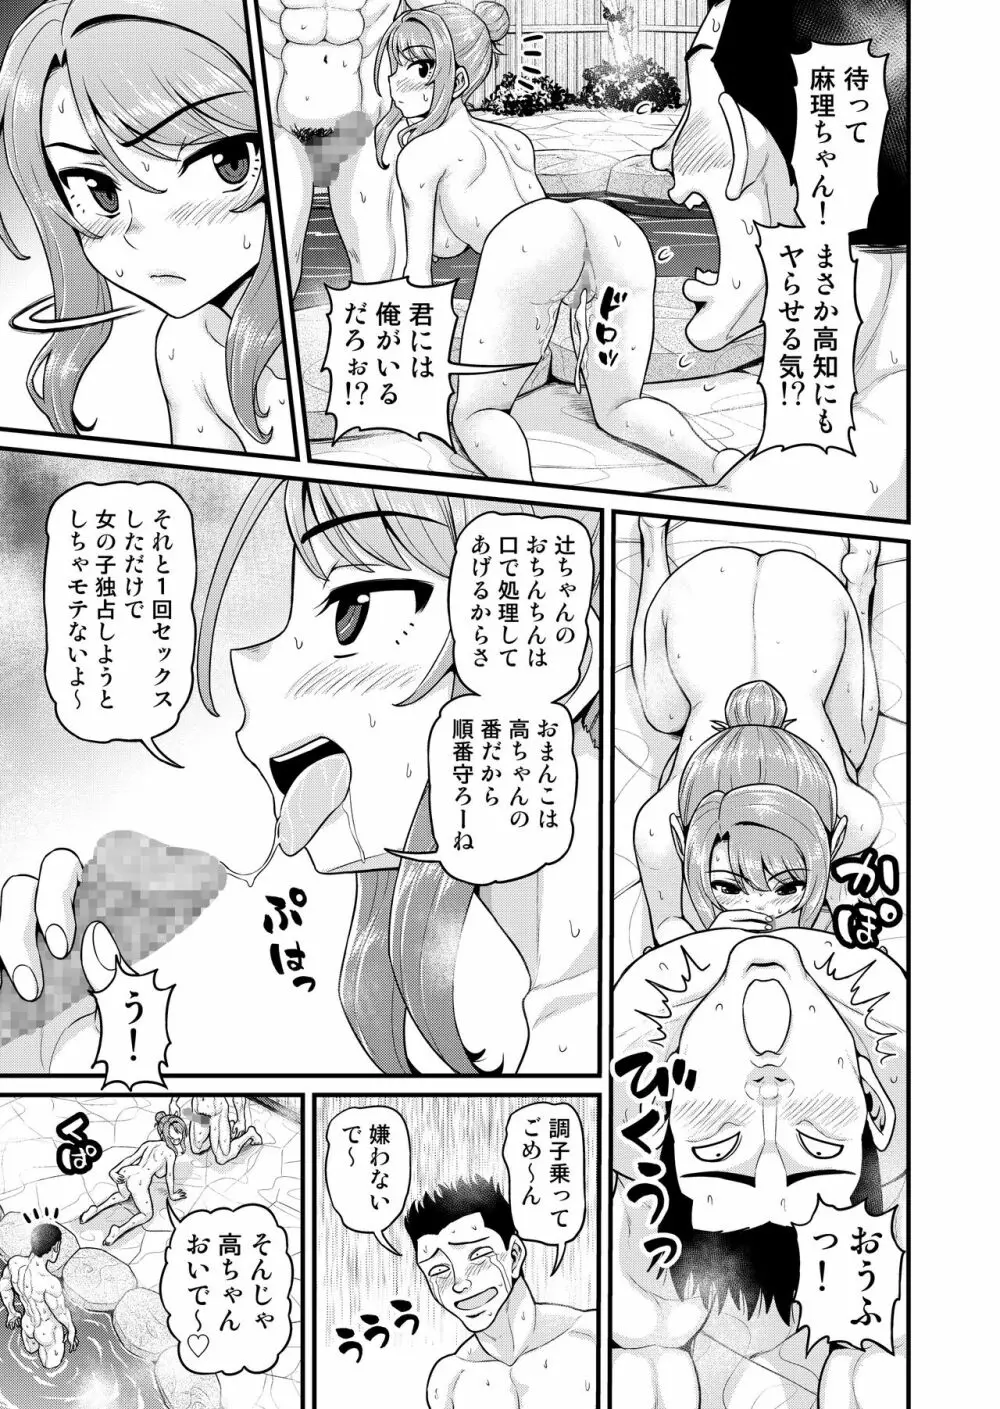 ゲーム友達の女の子と温泉旅行でヤる話NTRver. 40ページ